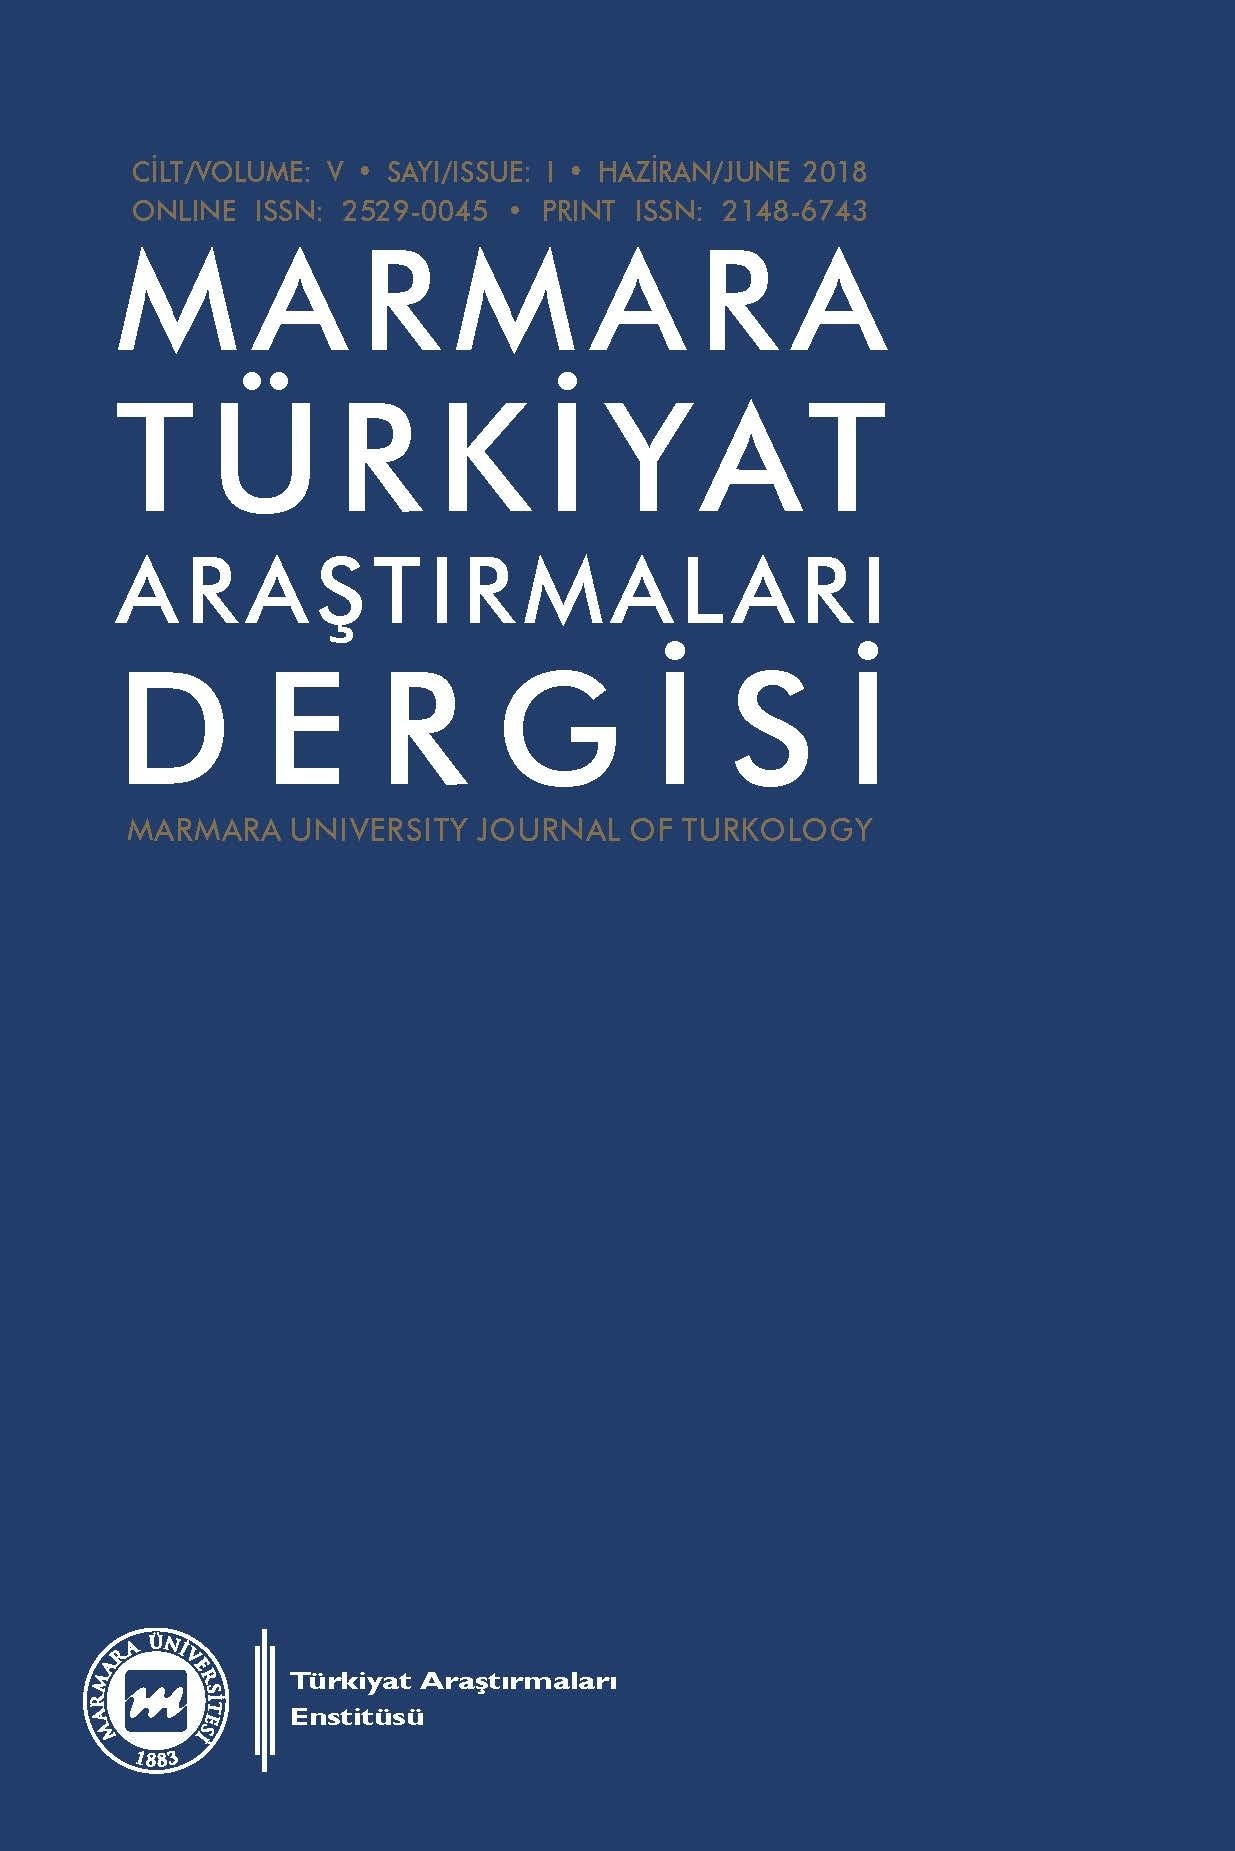 Marmara Türkiyat Araştırmaları Dergisi